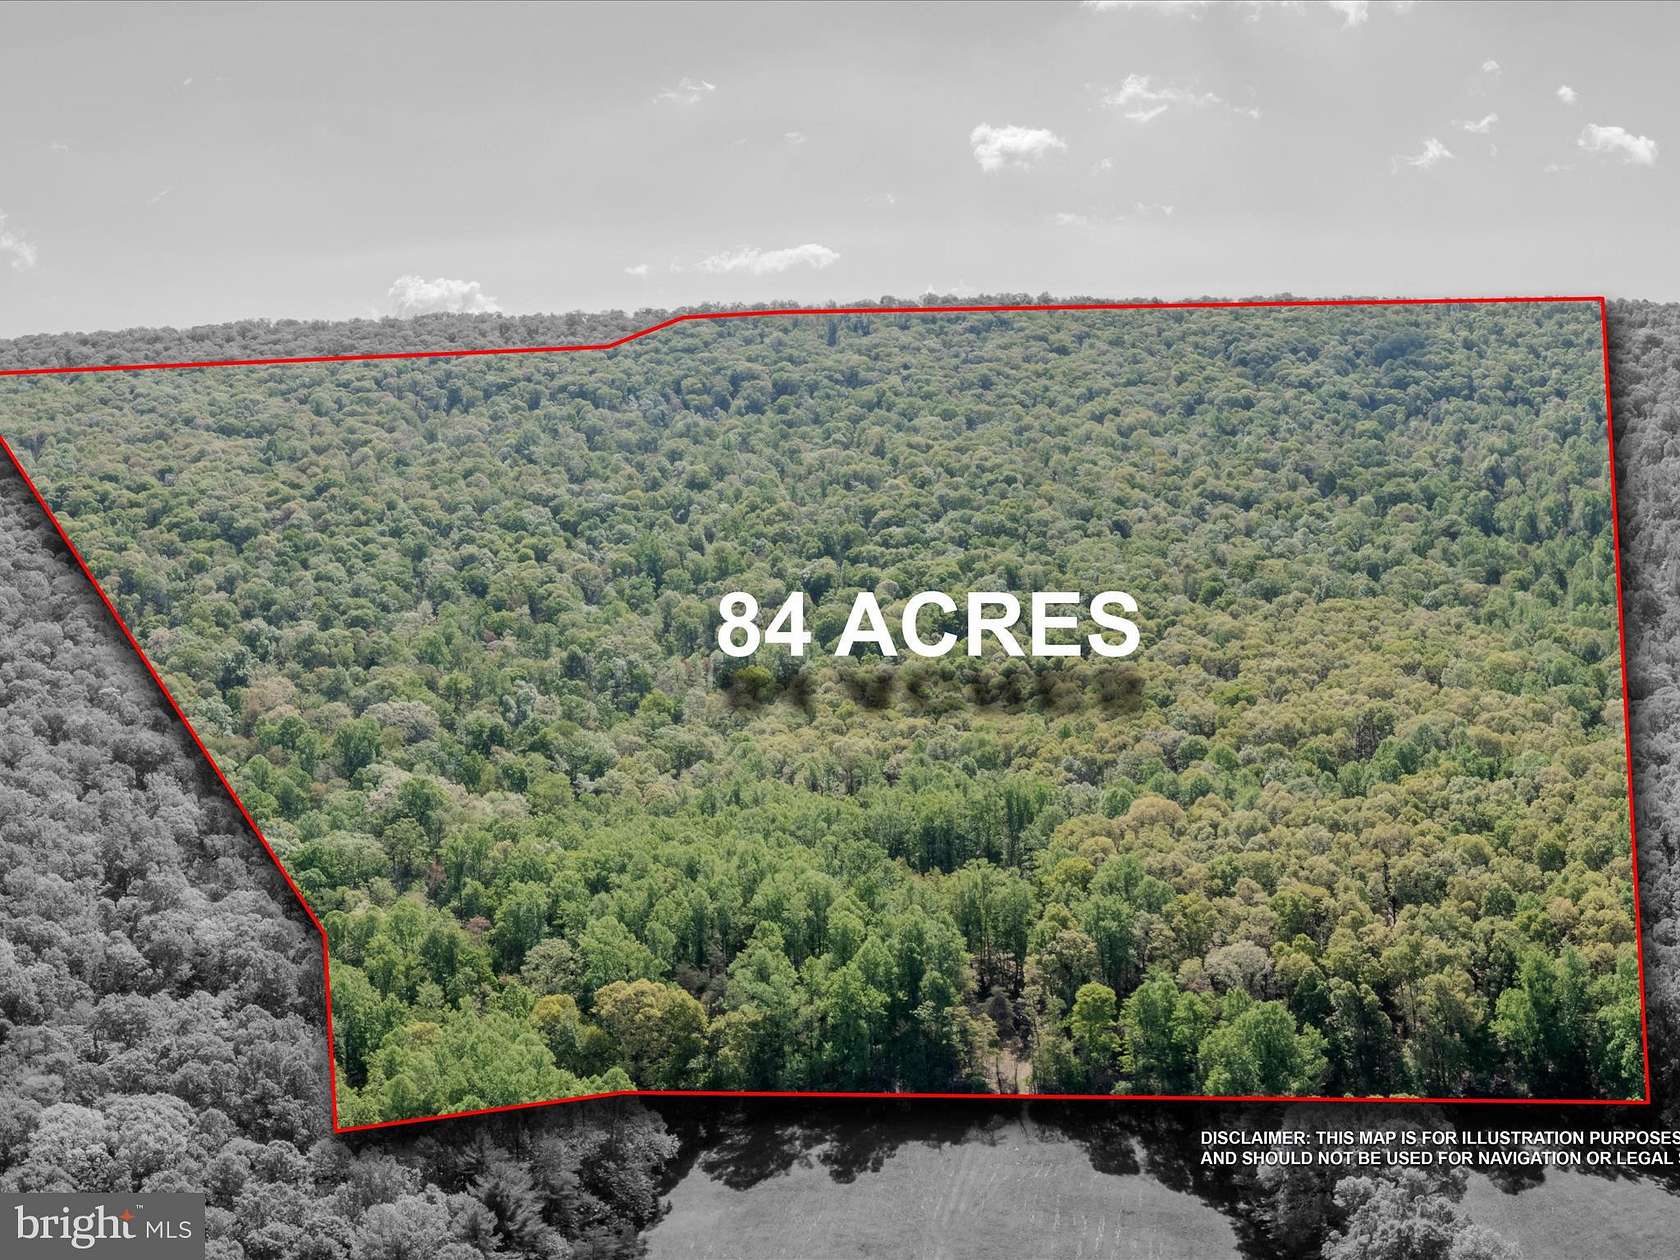 84.6 Acres of Land for Sale in Berkeley Springs, West Virginia